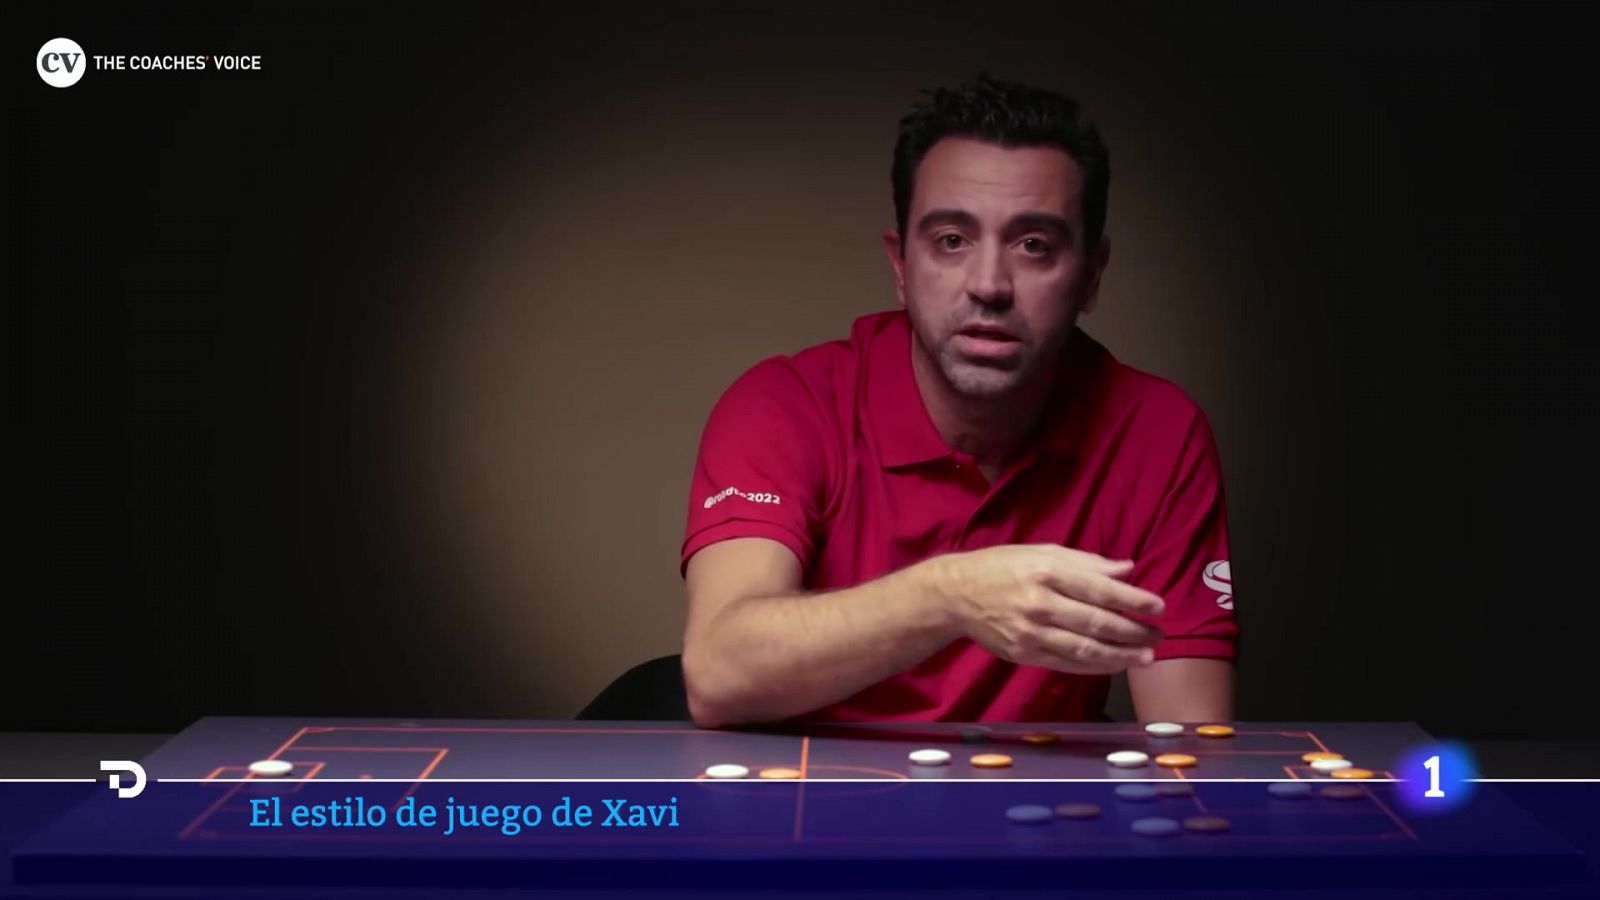 El estilo de juego de Xavi, el entrenador que quiere el Barça -- Ver ahora